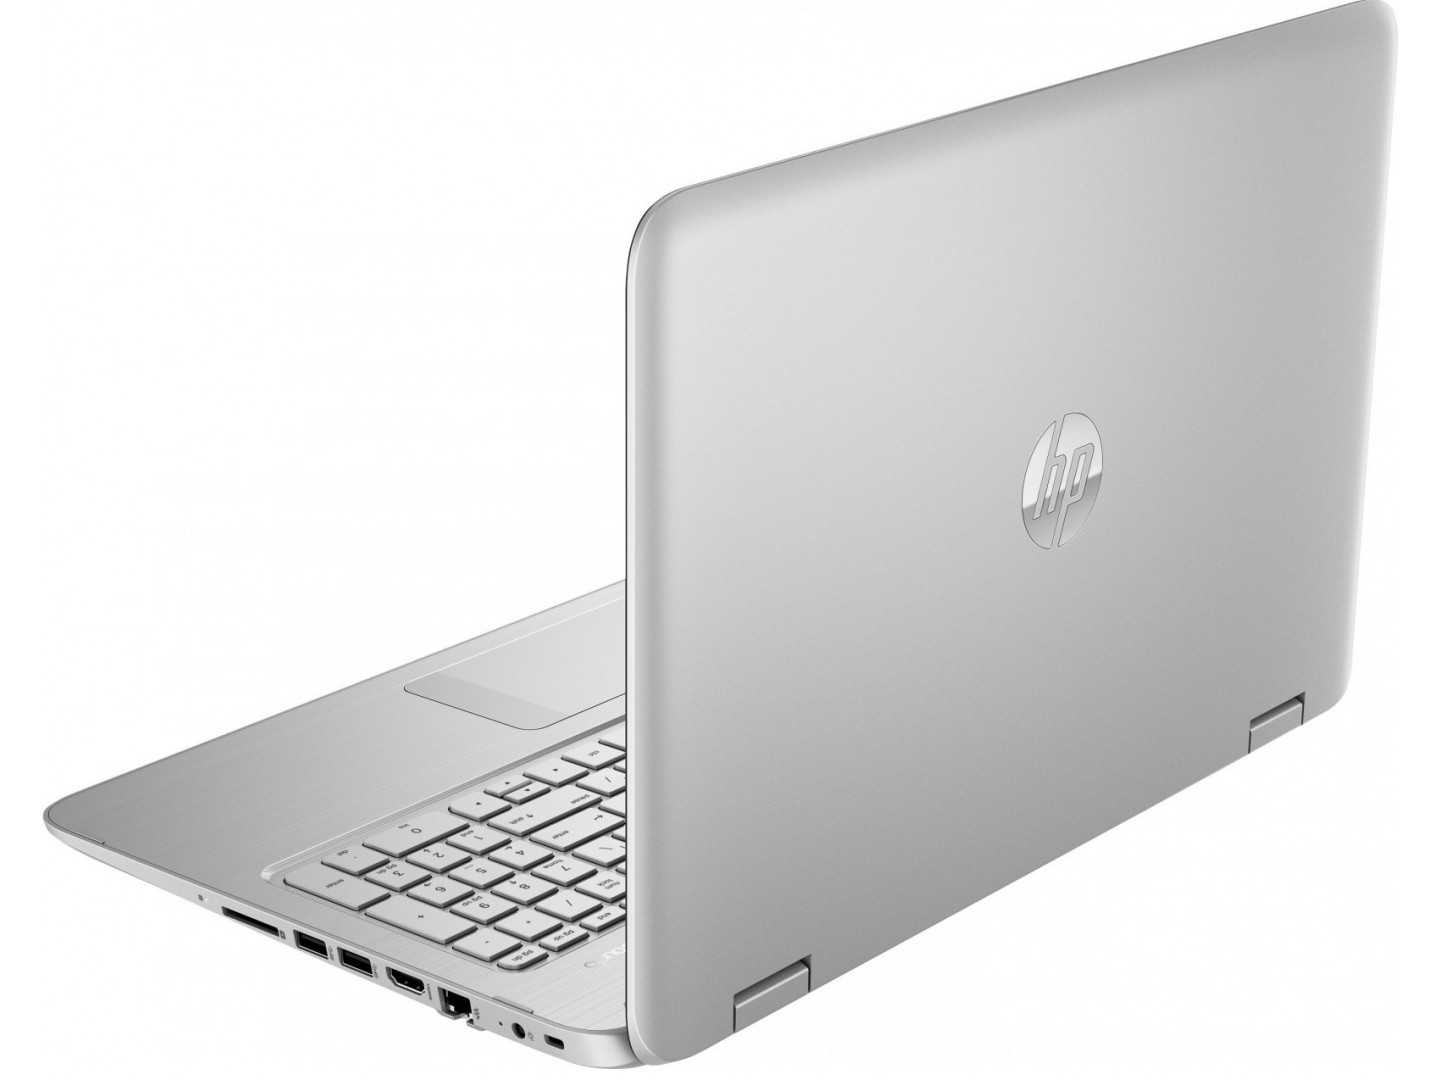 Ноутбук hp 255 g5 (w4m79ea) — купить, цена и характеристики, отзывы